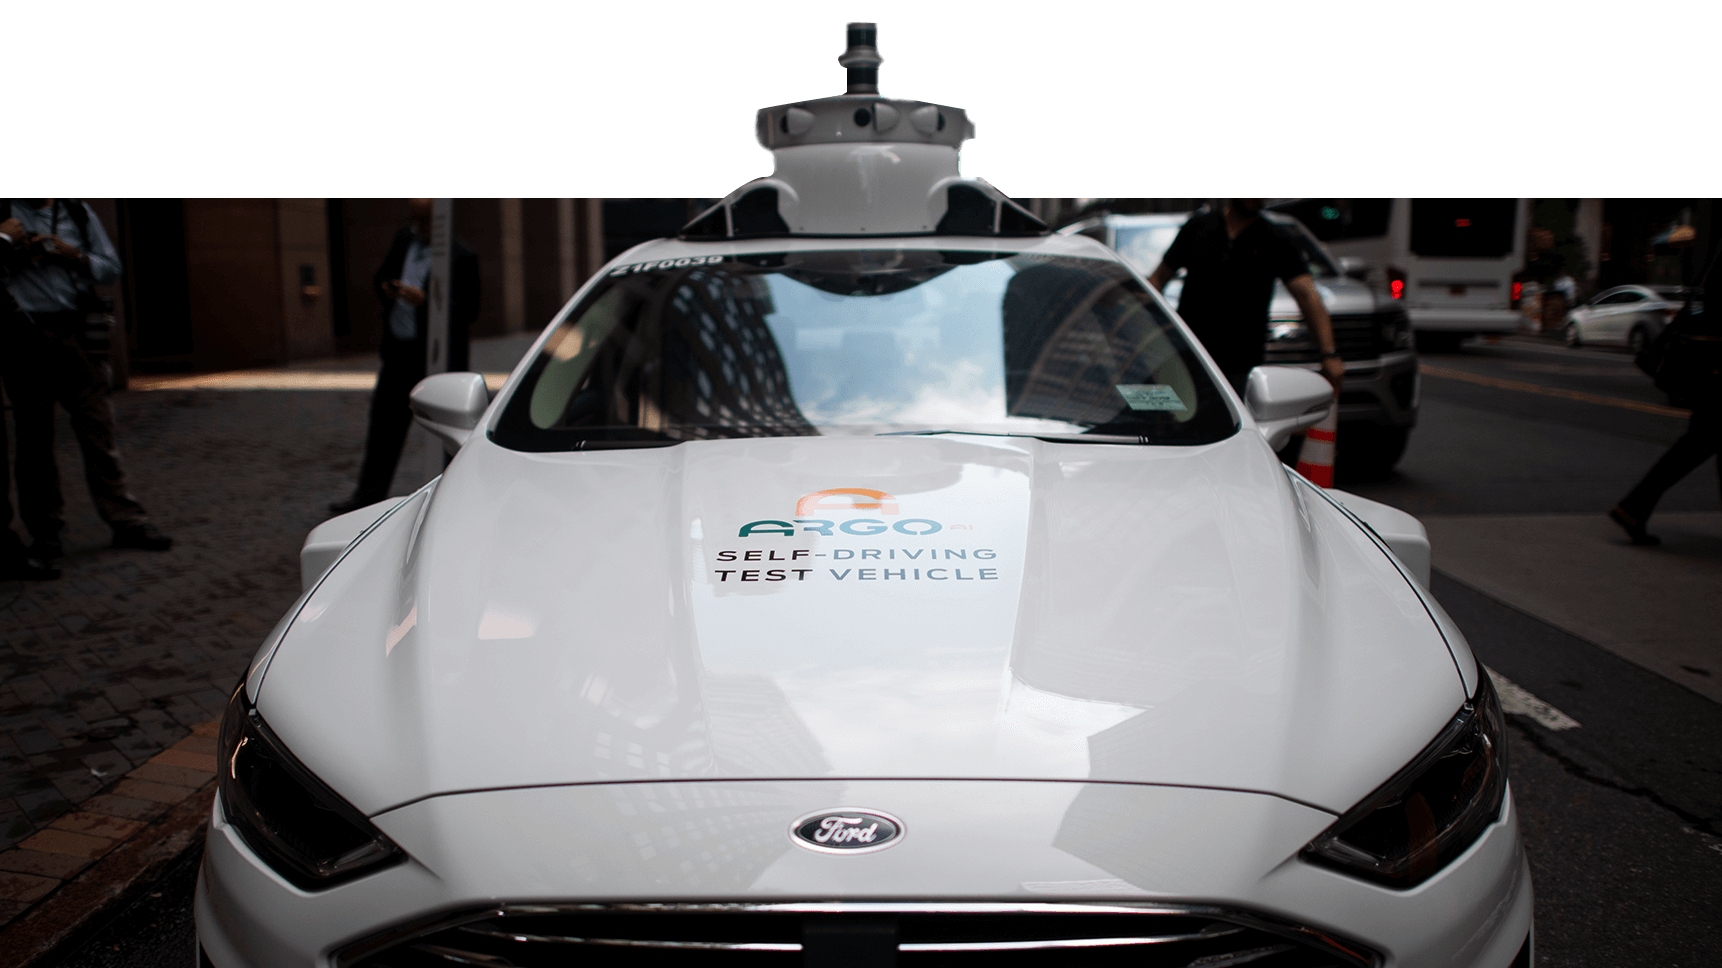 6G could provide next-gen networks for autonomous vehicles.